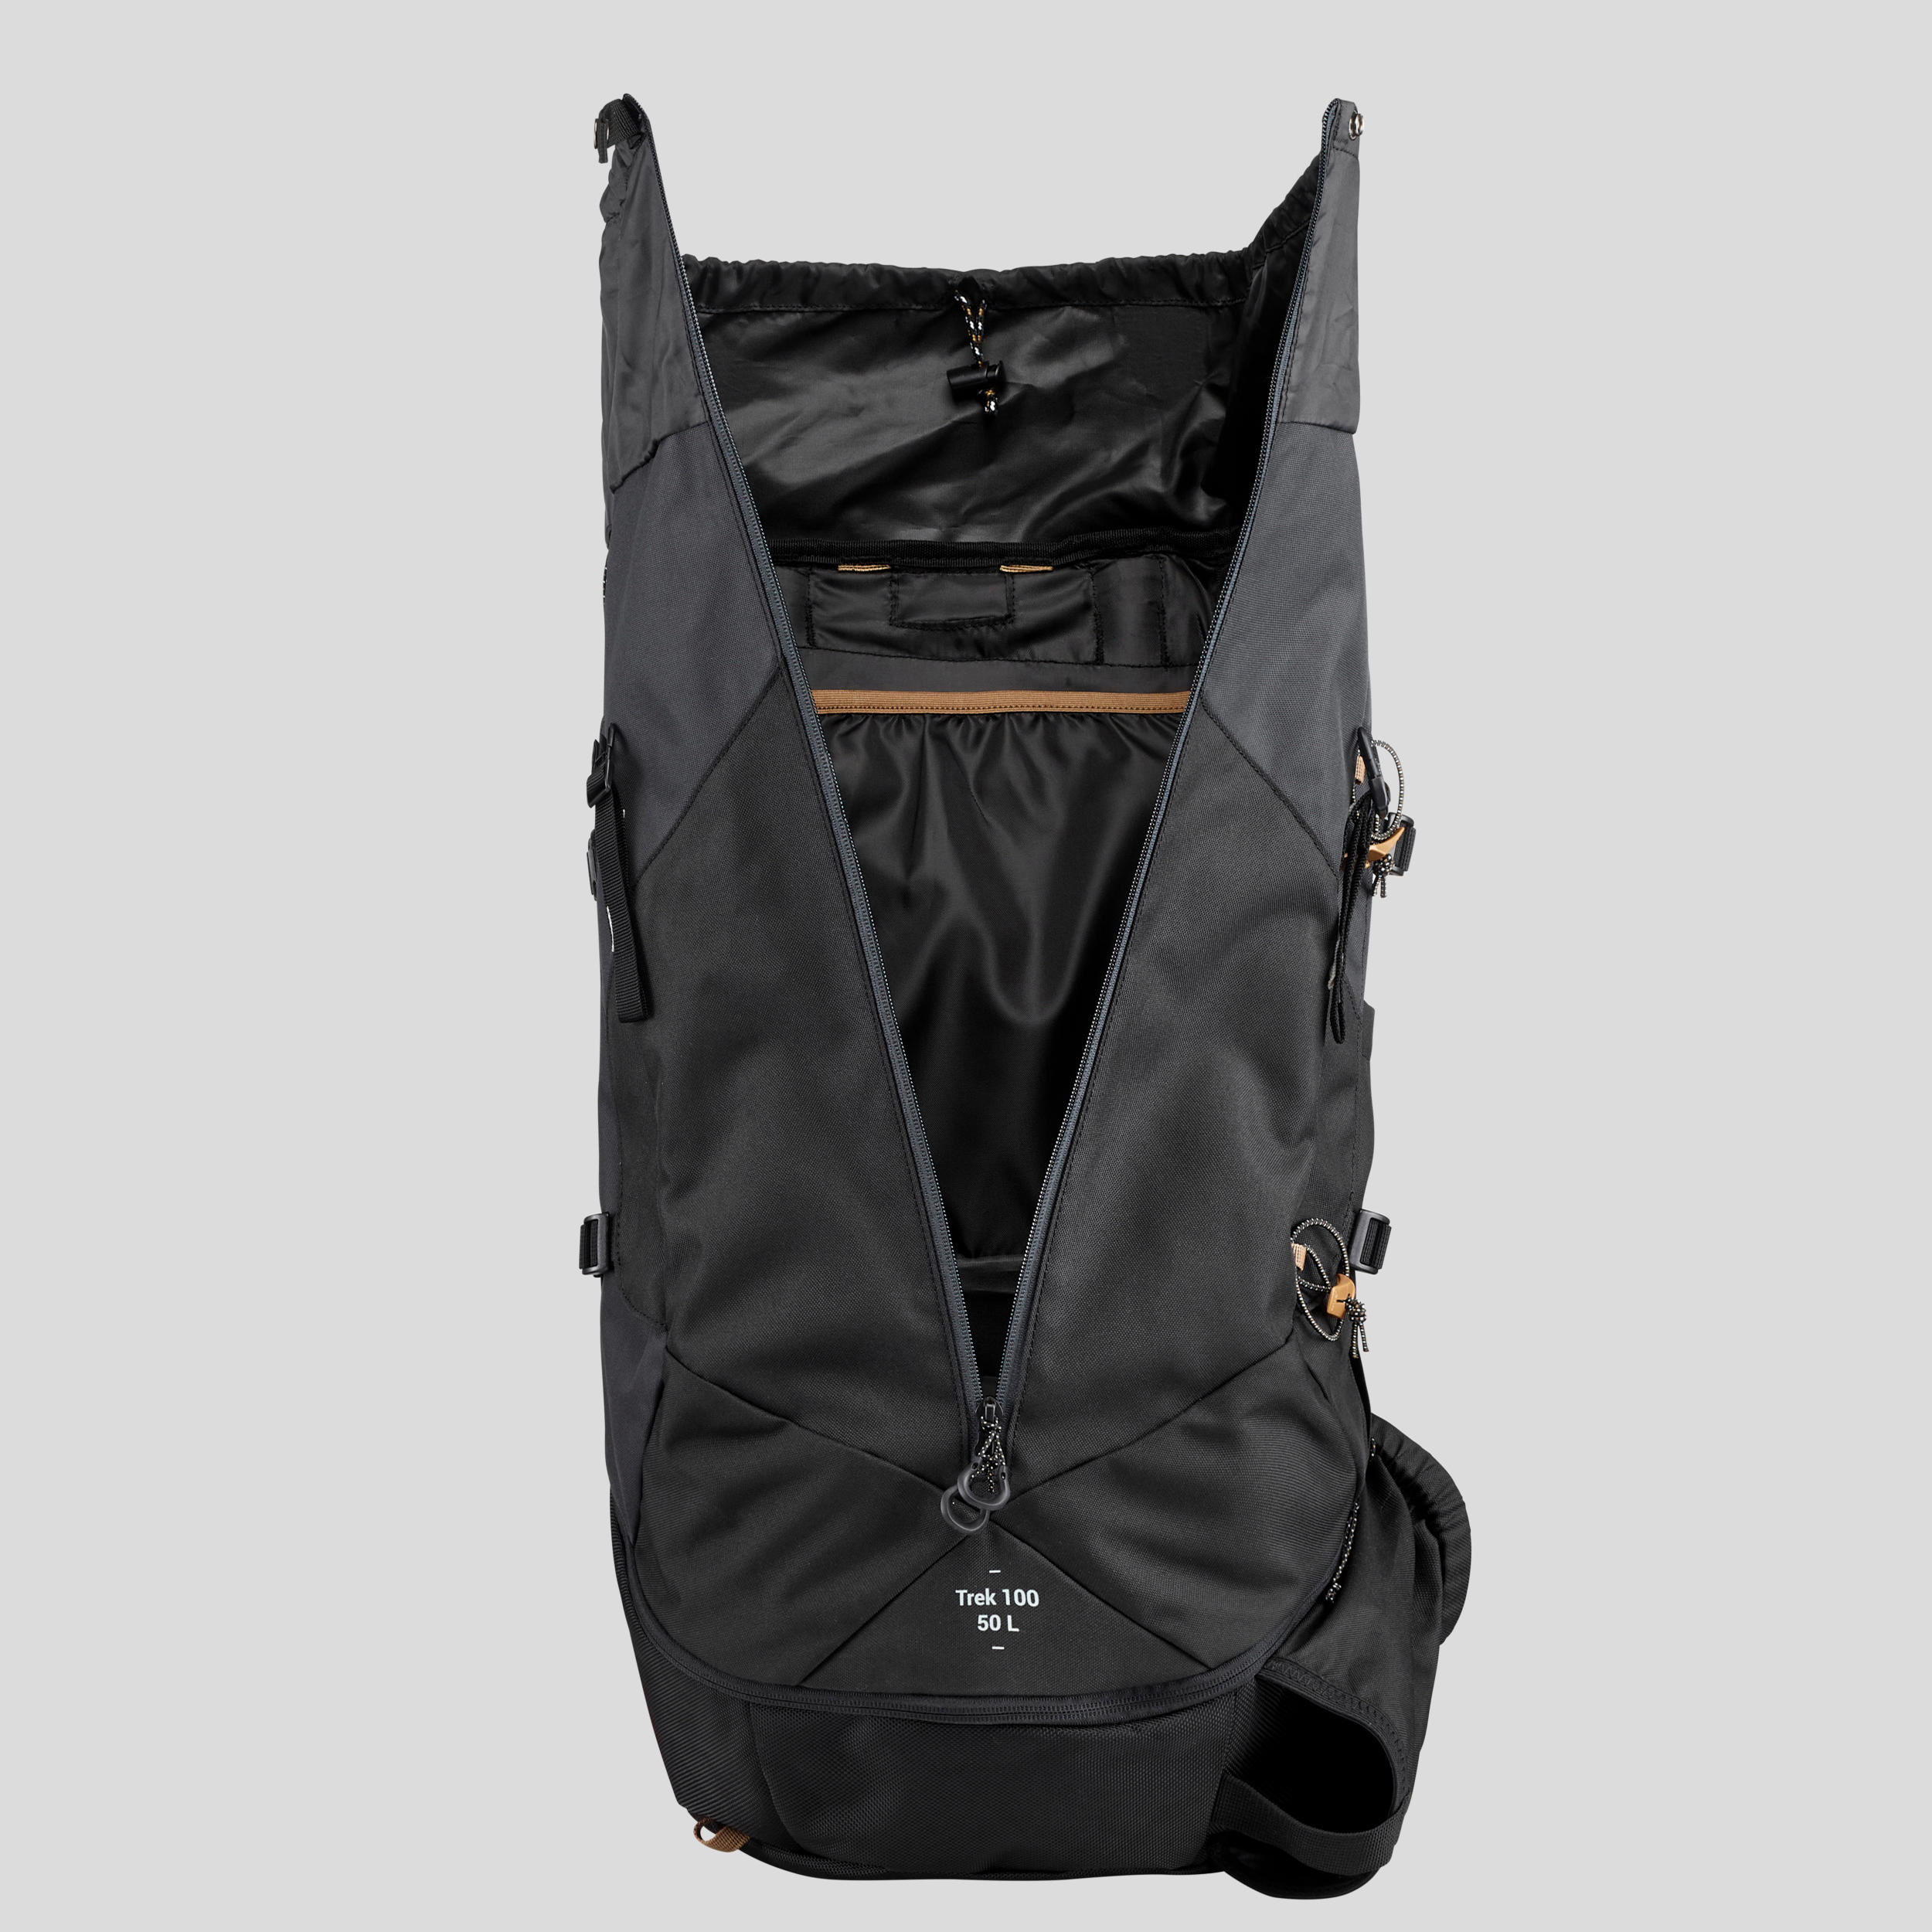 Men’s 50 L Hiking Backpack - Easyfit MT 100 - FORCLAZ